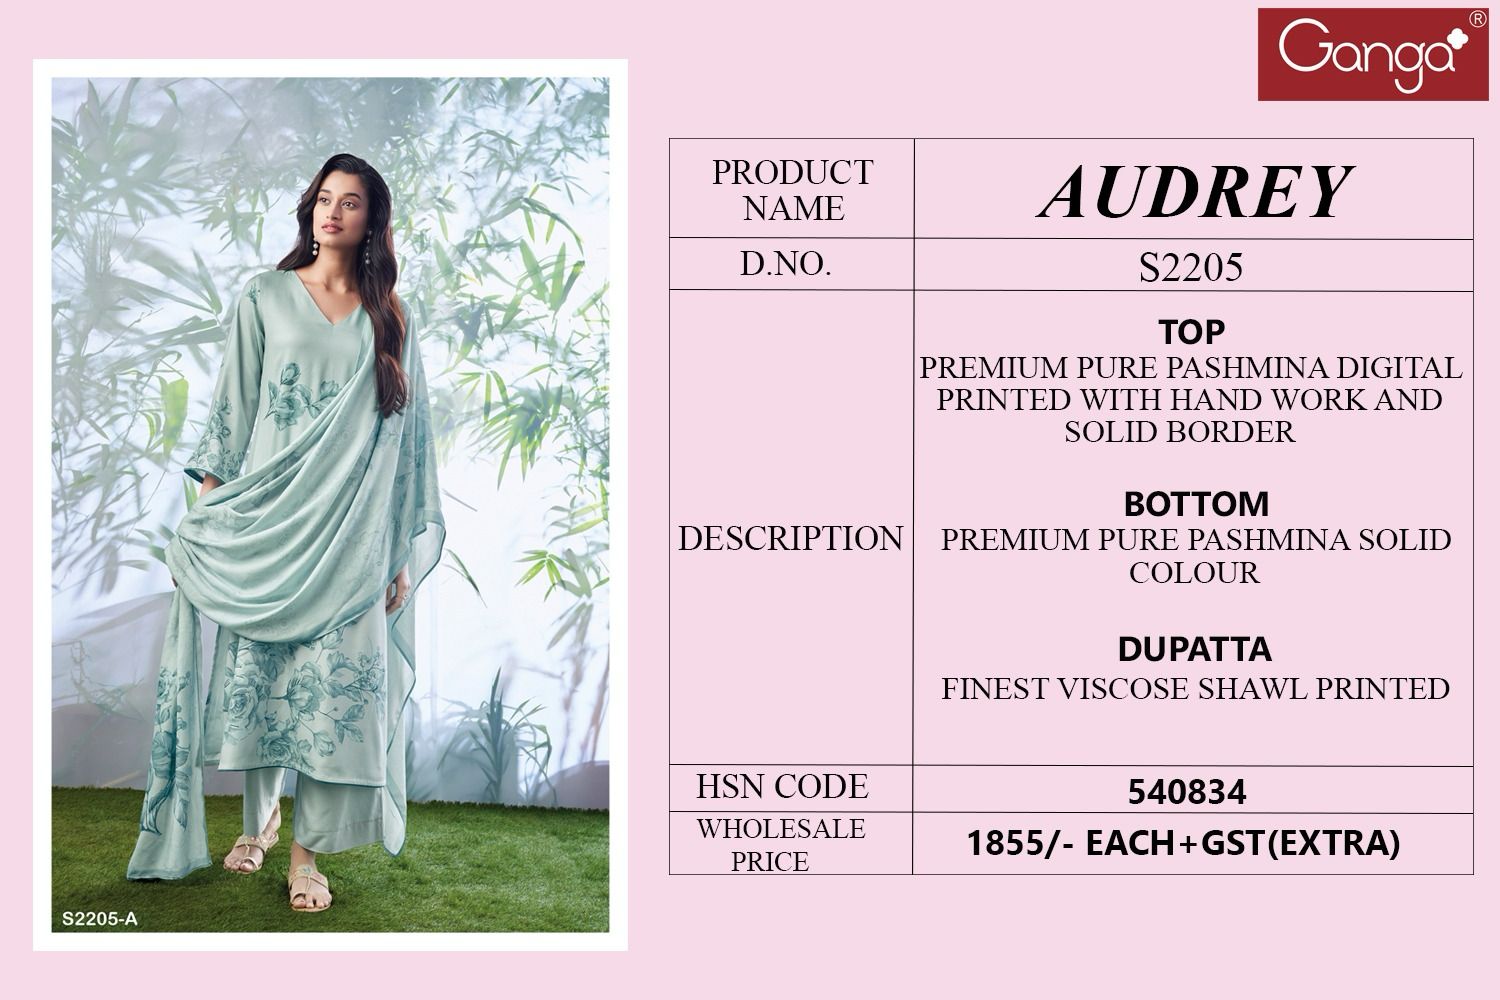 S2205-Abcd Audrey Ganga Pashmina Suits